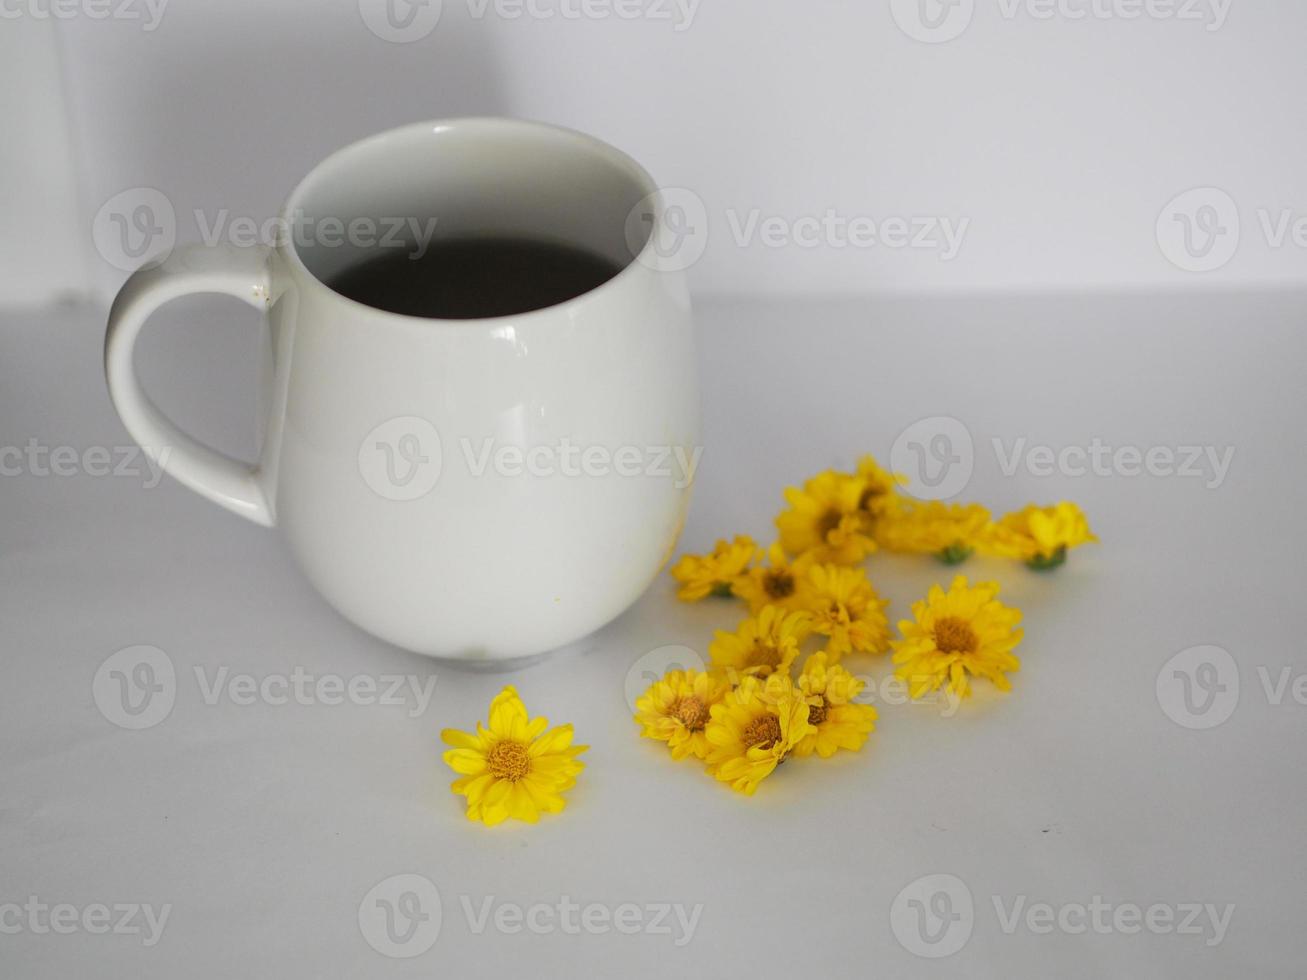 suco de crisântemo, beber água crisântemo indicum nome científico dendranthema morifolium, flavonóides, em xícara de chá branca closeup pólen de flor amarela foto